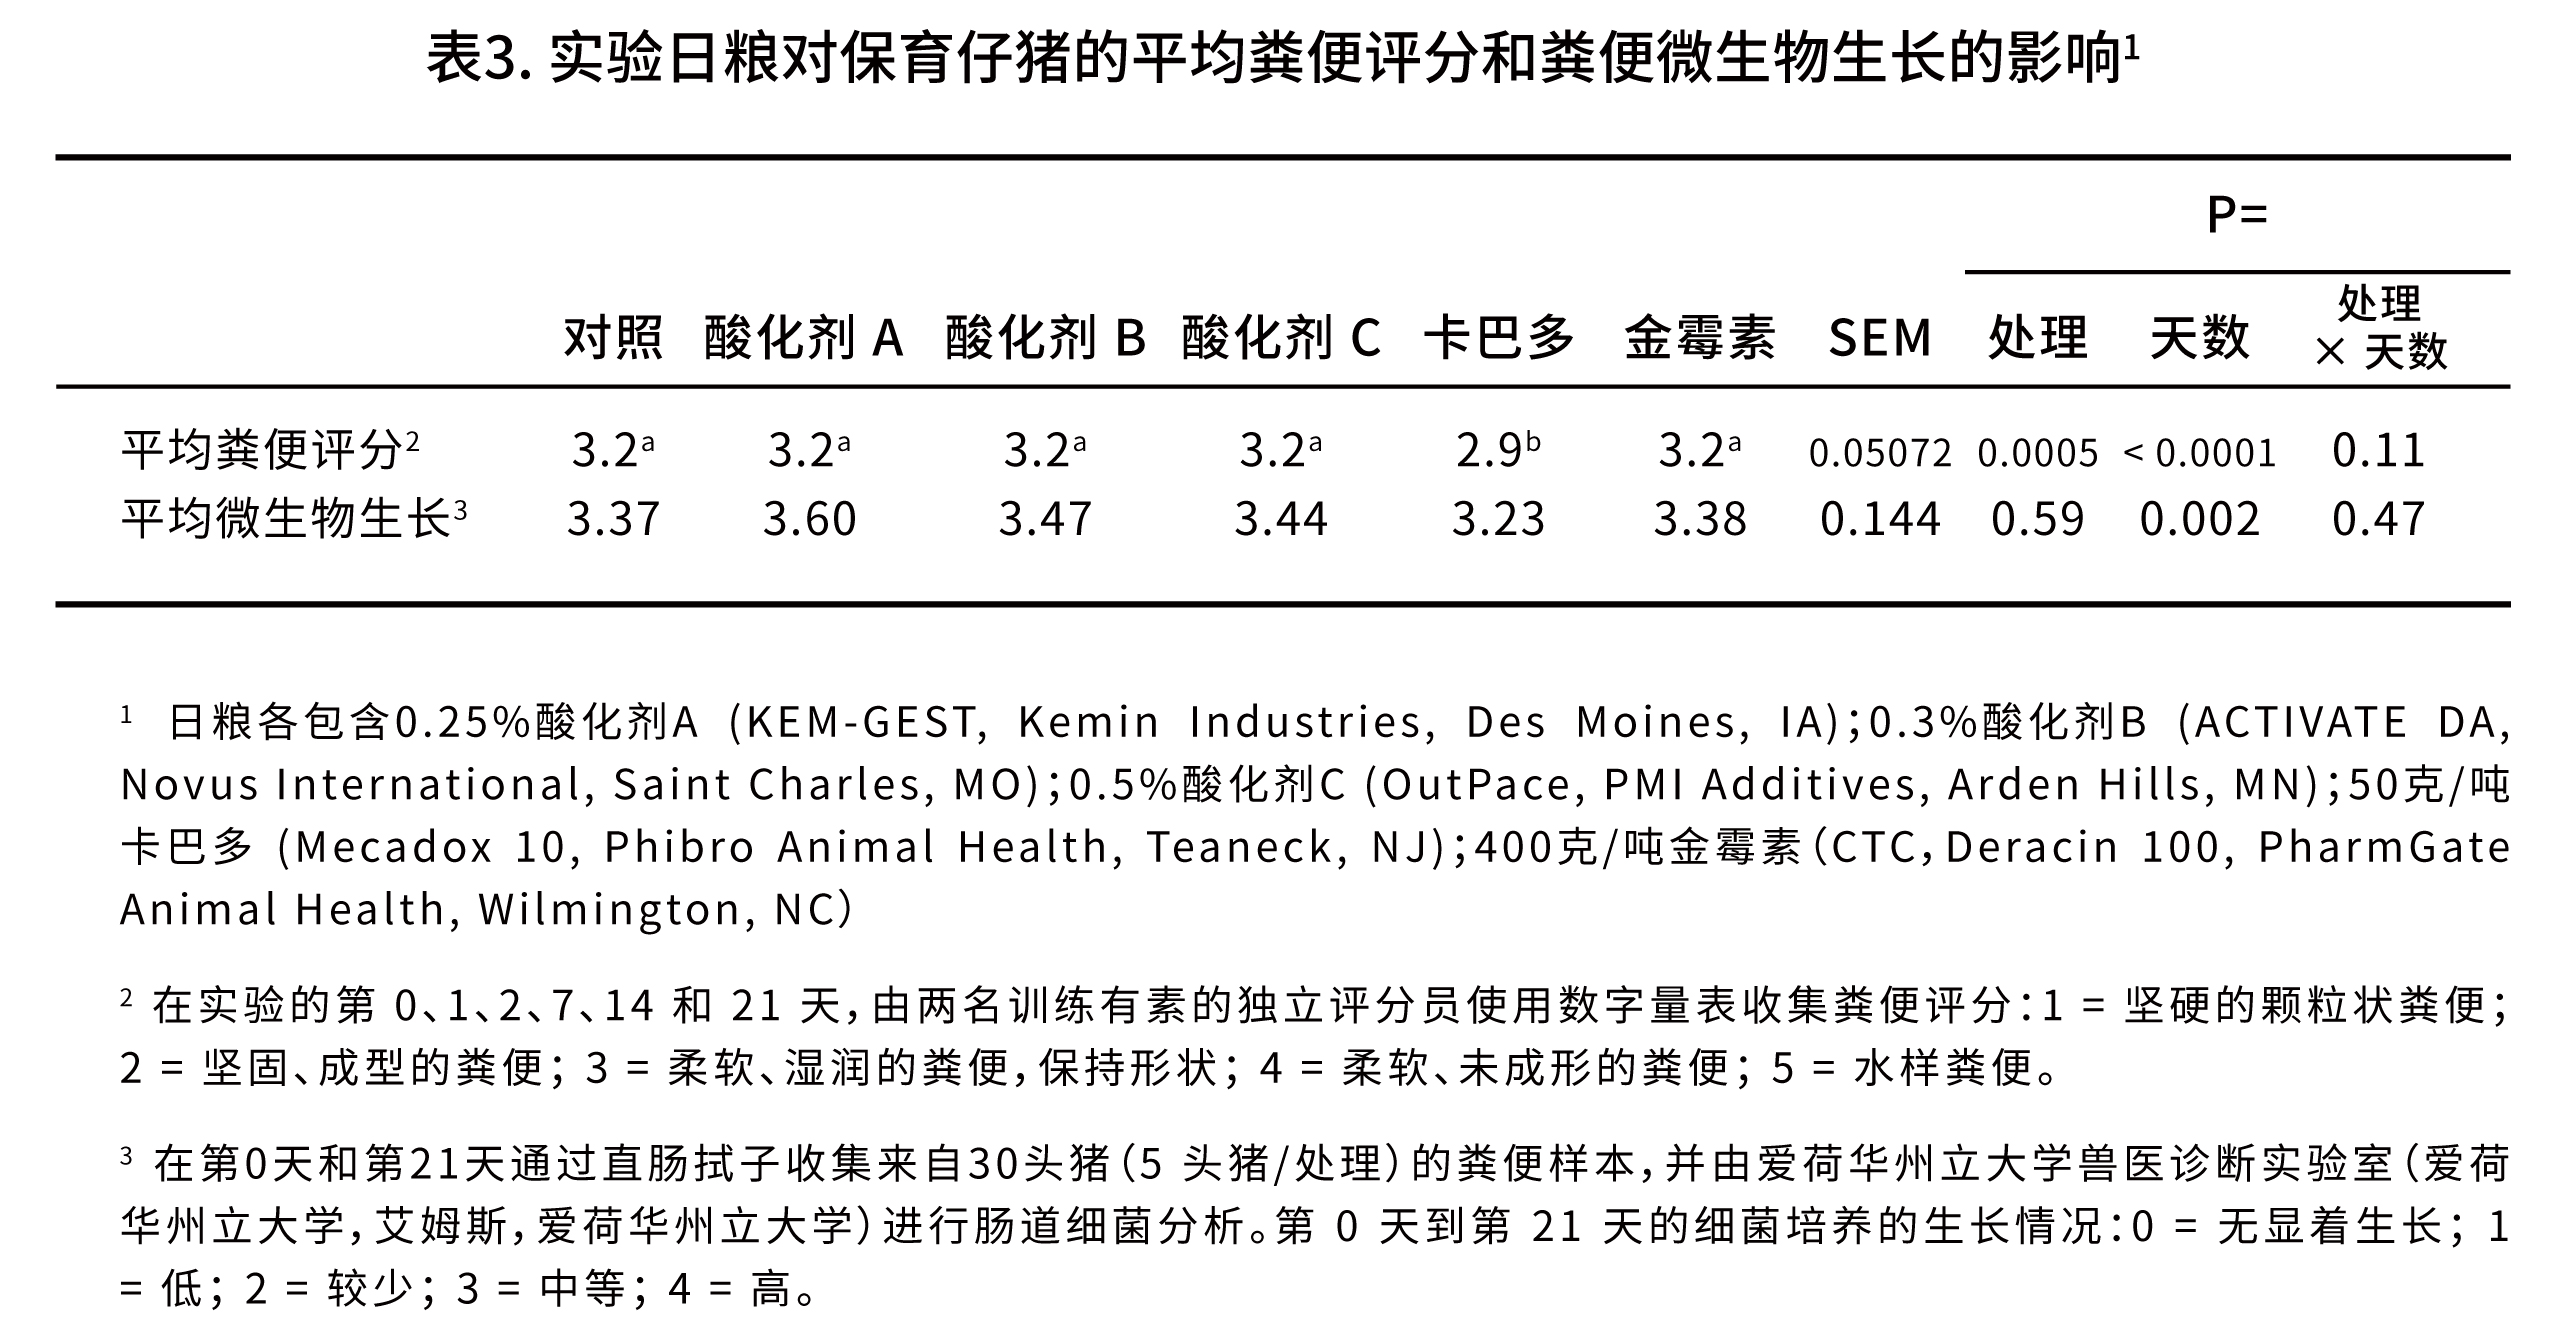 评估饲用酸化剂作为保育猪日粮中传统饲用抗生素的替代品-表格-03.jpg